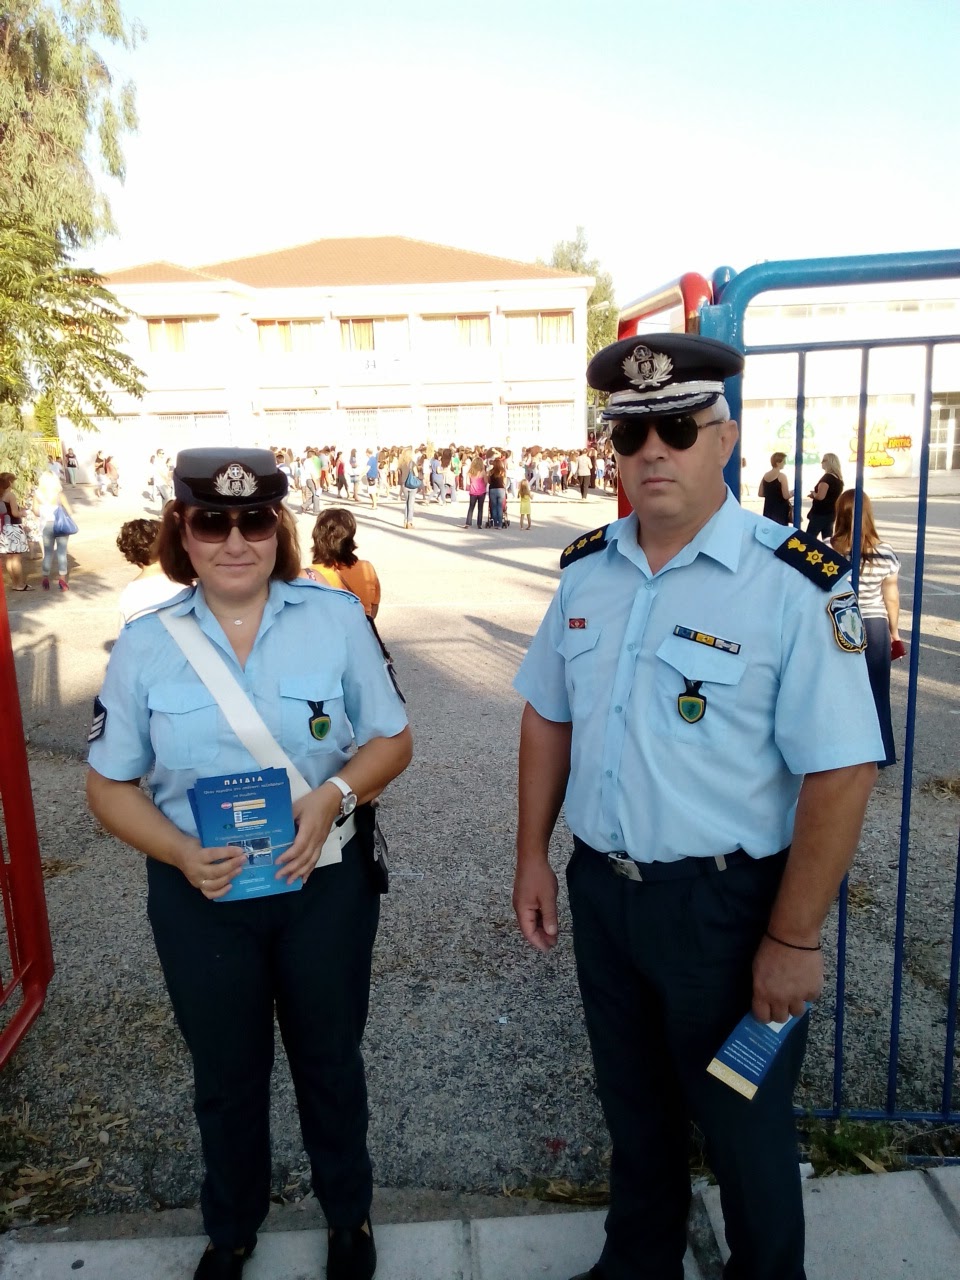 Αποτέλεσμα εικόνας για Διανομή σχολικών φυλλαδίων από την Ελληνική Αστυνομία στην Δυτική Ελλάδα